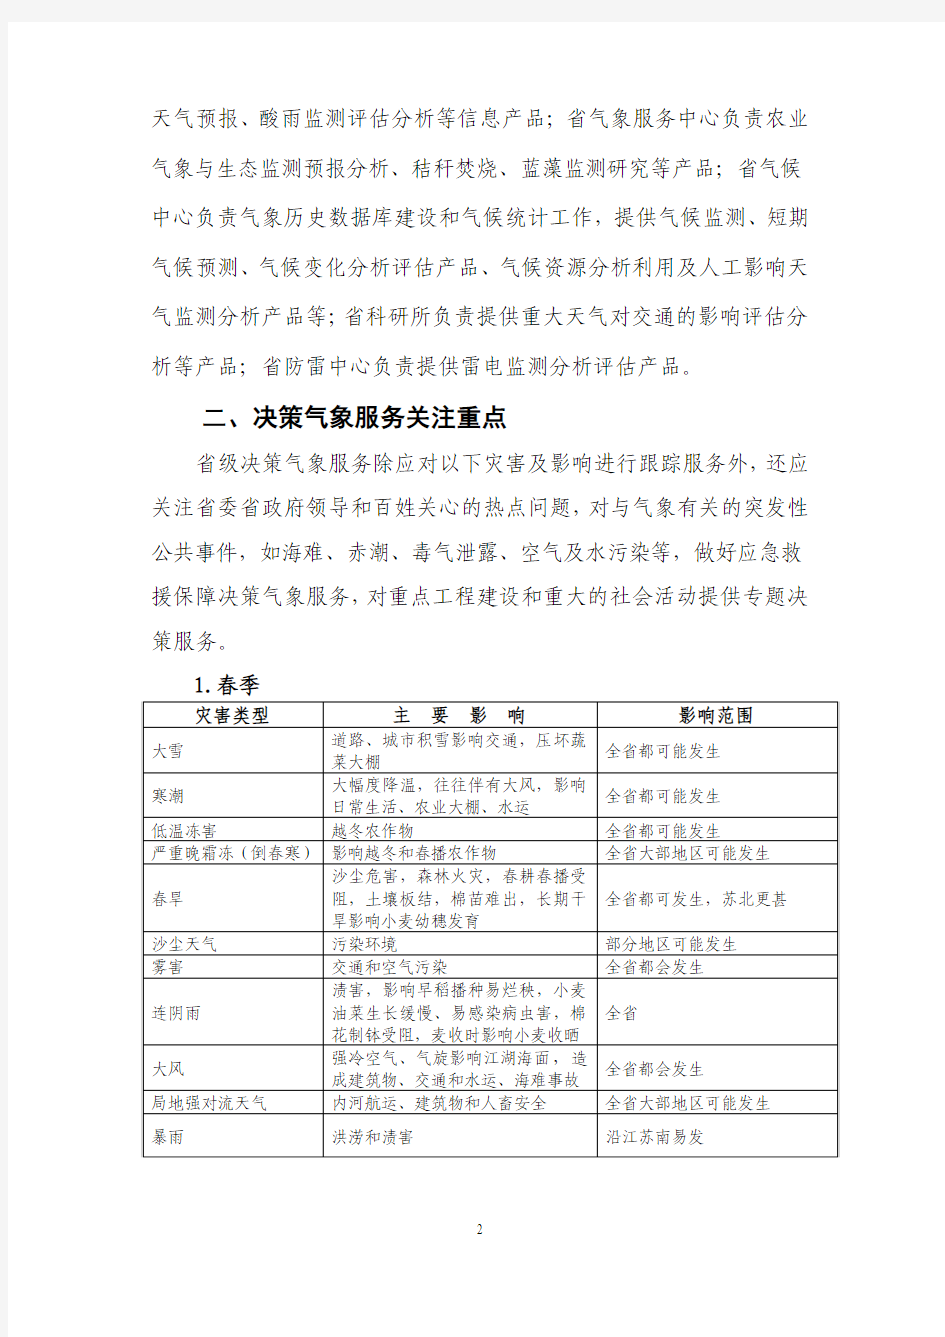 2012年江苏省气象局决策气象服务方案